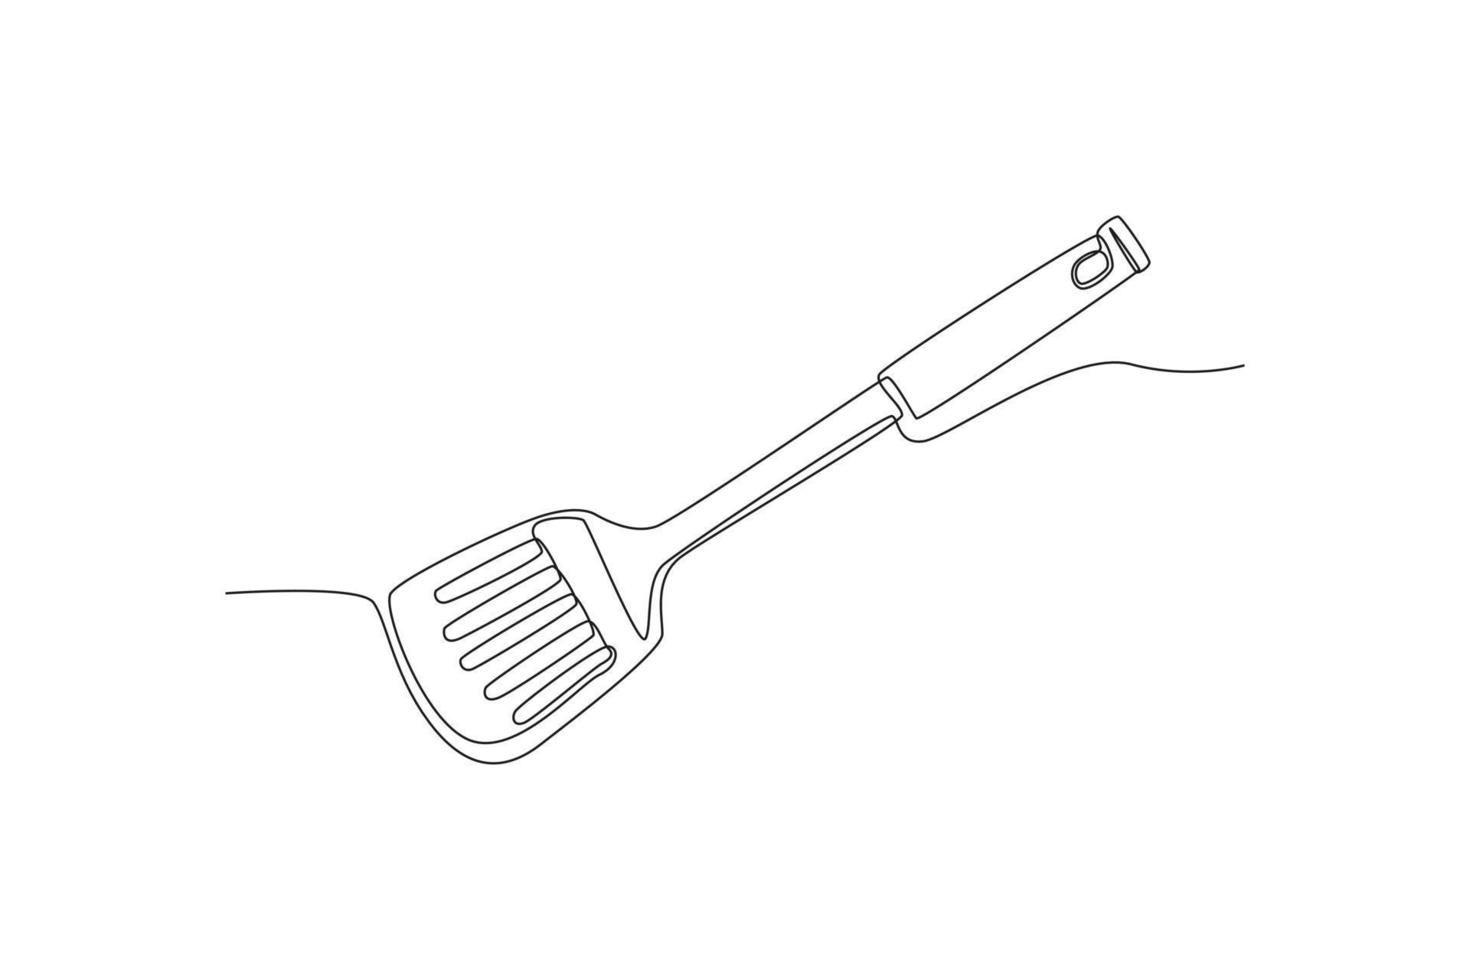 Küchenspatel mit fortlaufender einzeiliger Zeichnung. Küchengeräte-Konzept. einzeiliges zeichnen design vektorgrafik illustration. vektor